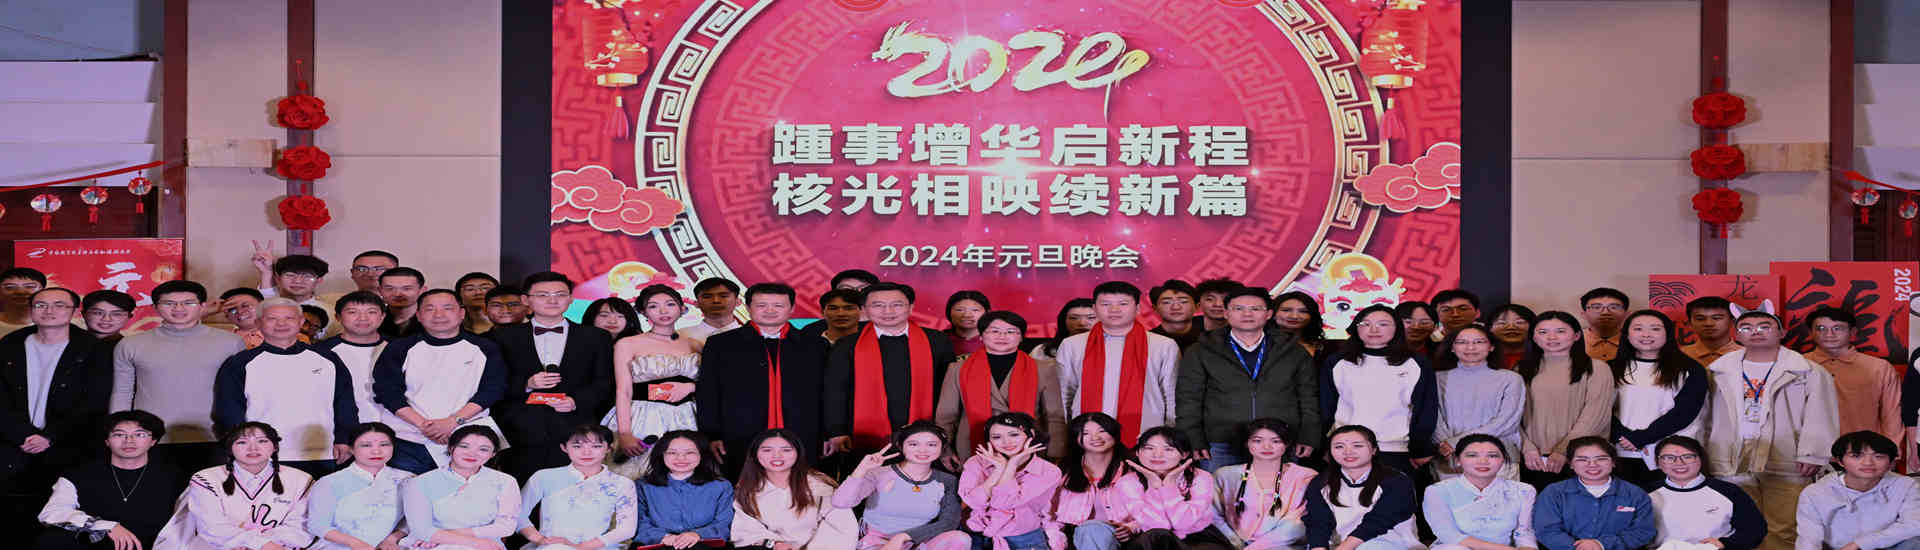 上海应物所举办“踵事增华启新程，核光相映续新篇”2024年元旦联欢晚会